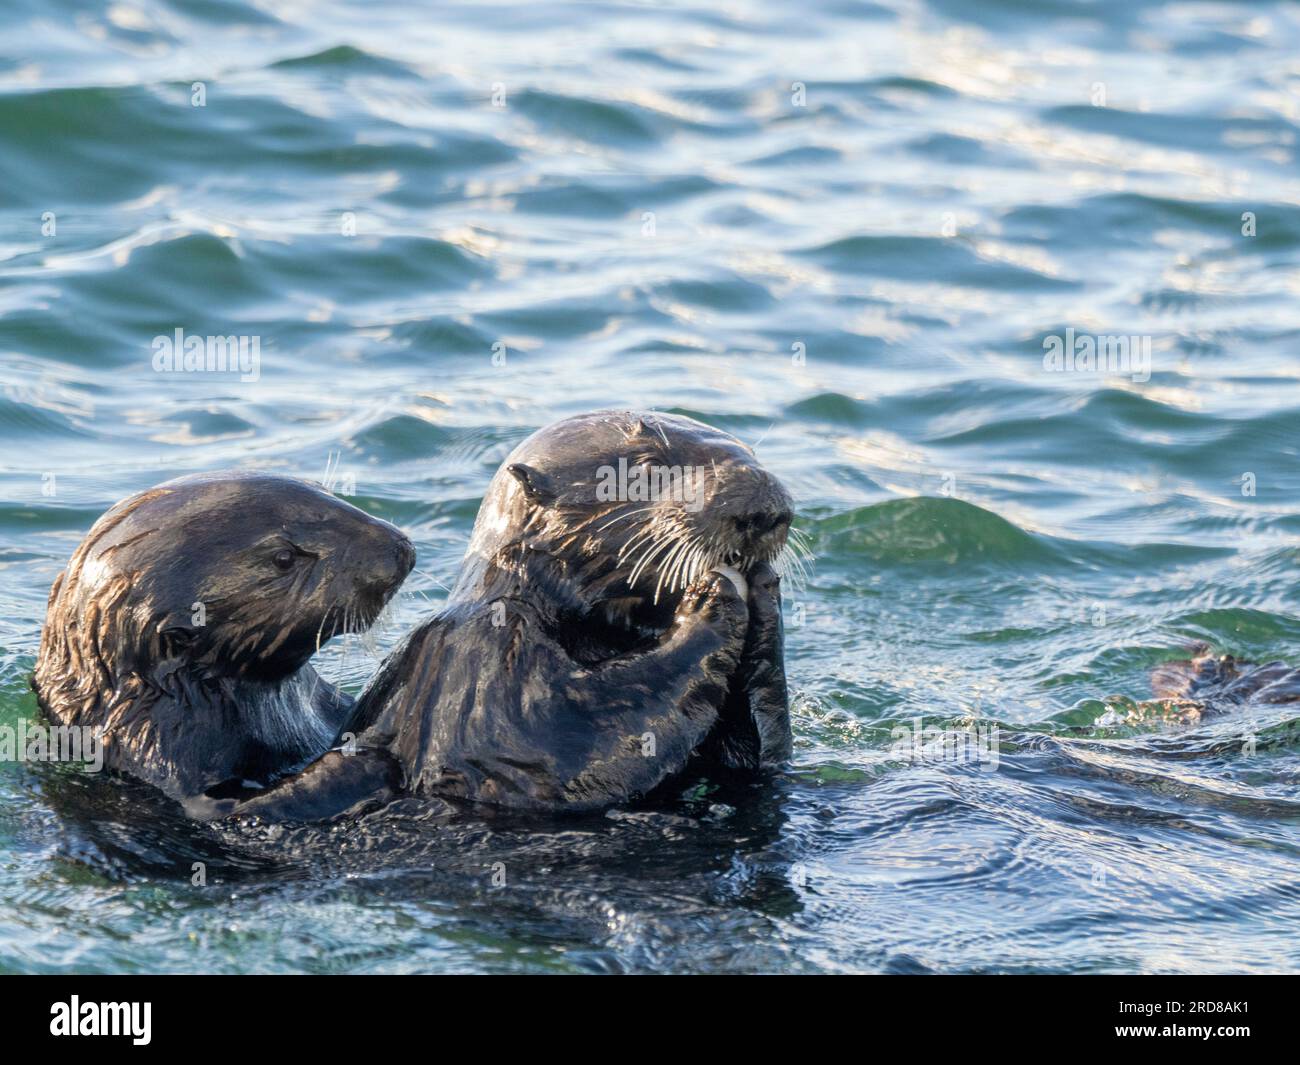 Mère et loutre de mer (Enhydra lutris), ensemble dans le Monterey Bay National Marine Sanctuary, Californie, États-Unis d'Amérique, Amérique du Nord Banque D'Images